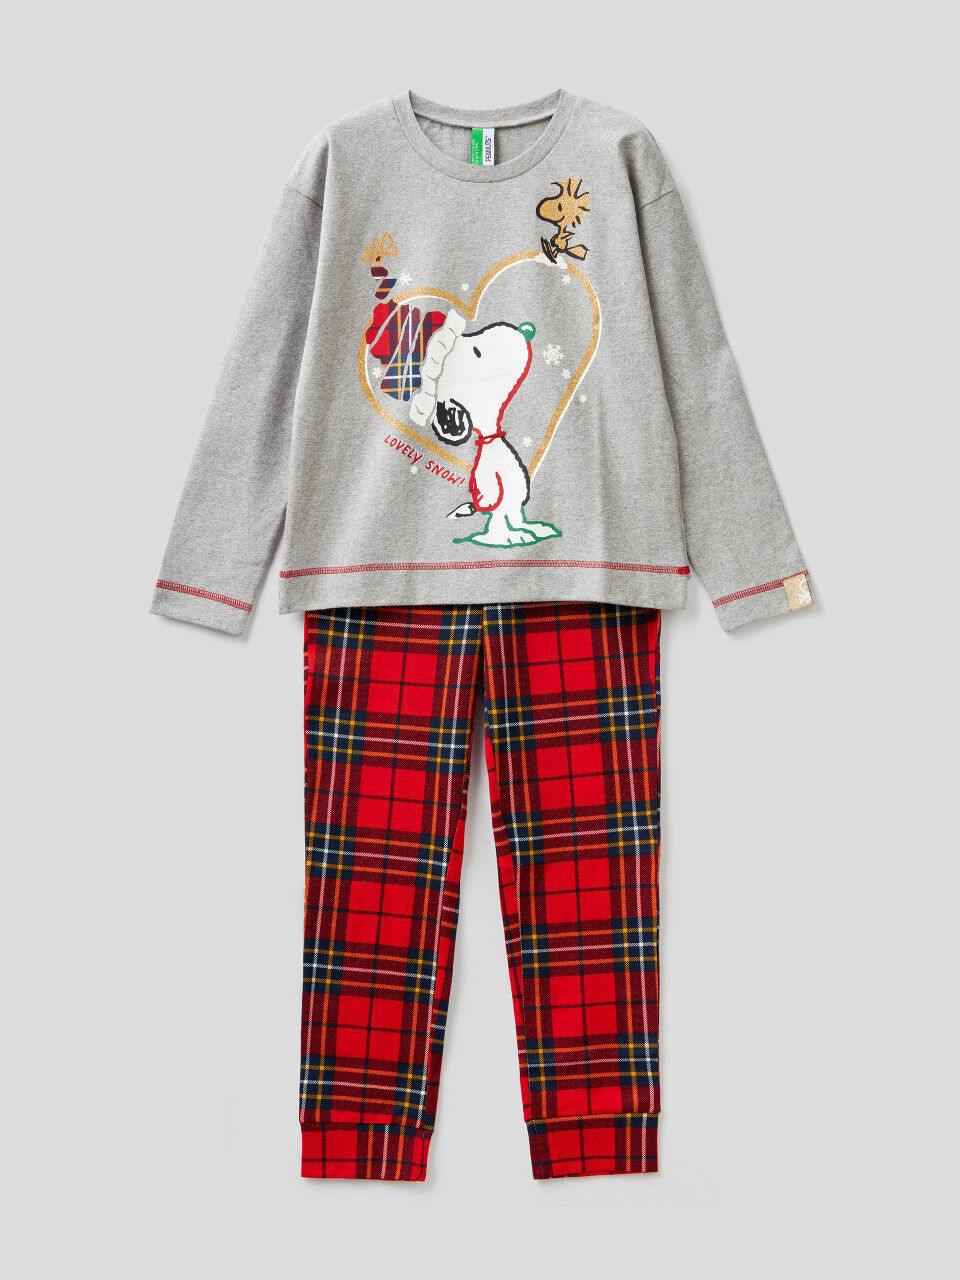 Snoopy Christmas pyjamas